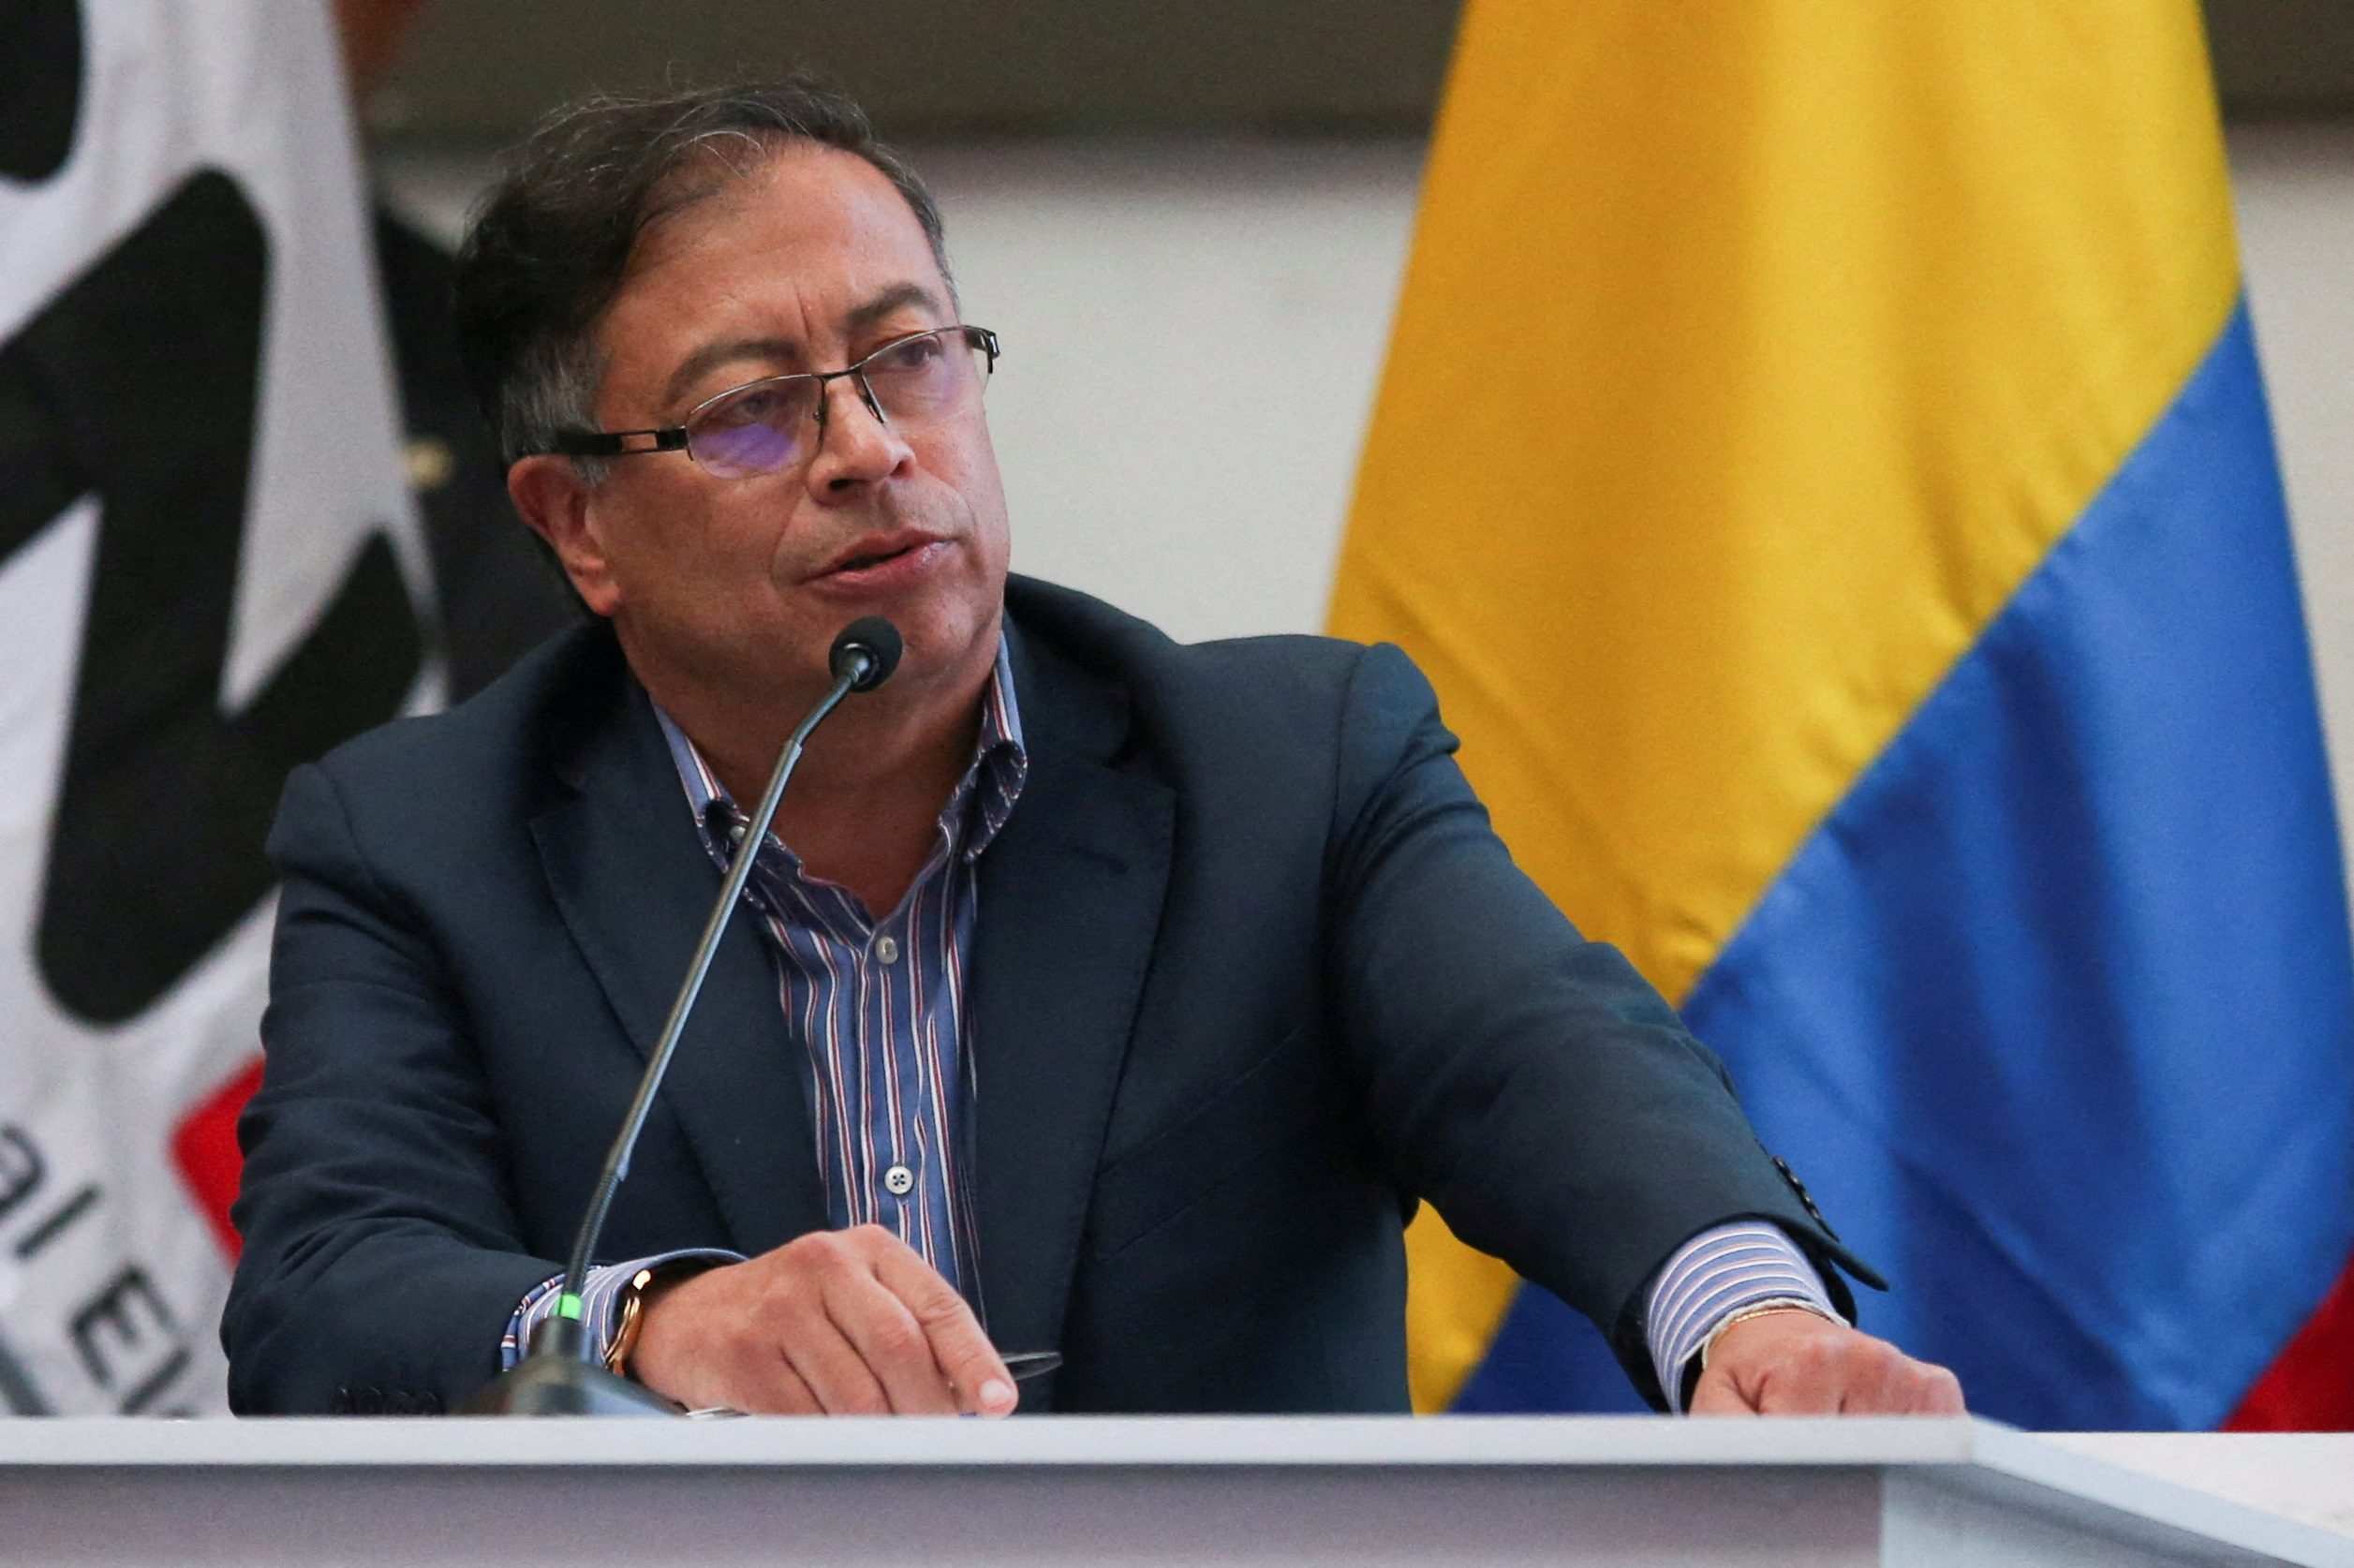 Nombra Gustavo Petro a compañero exguerrillero como director de inteligencia de Colombia